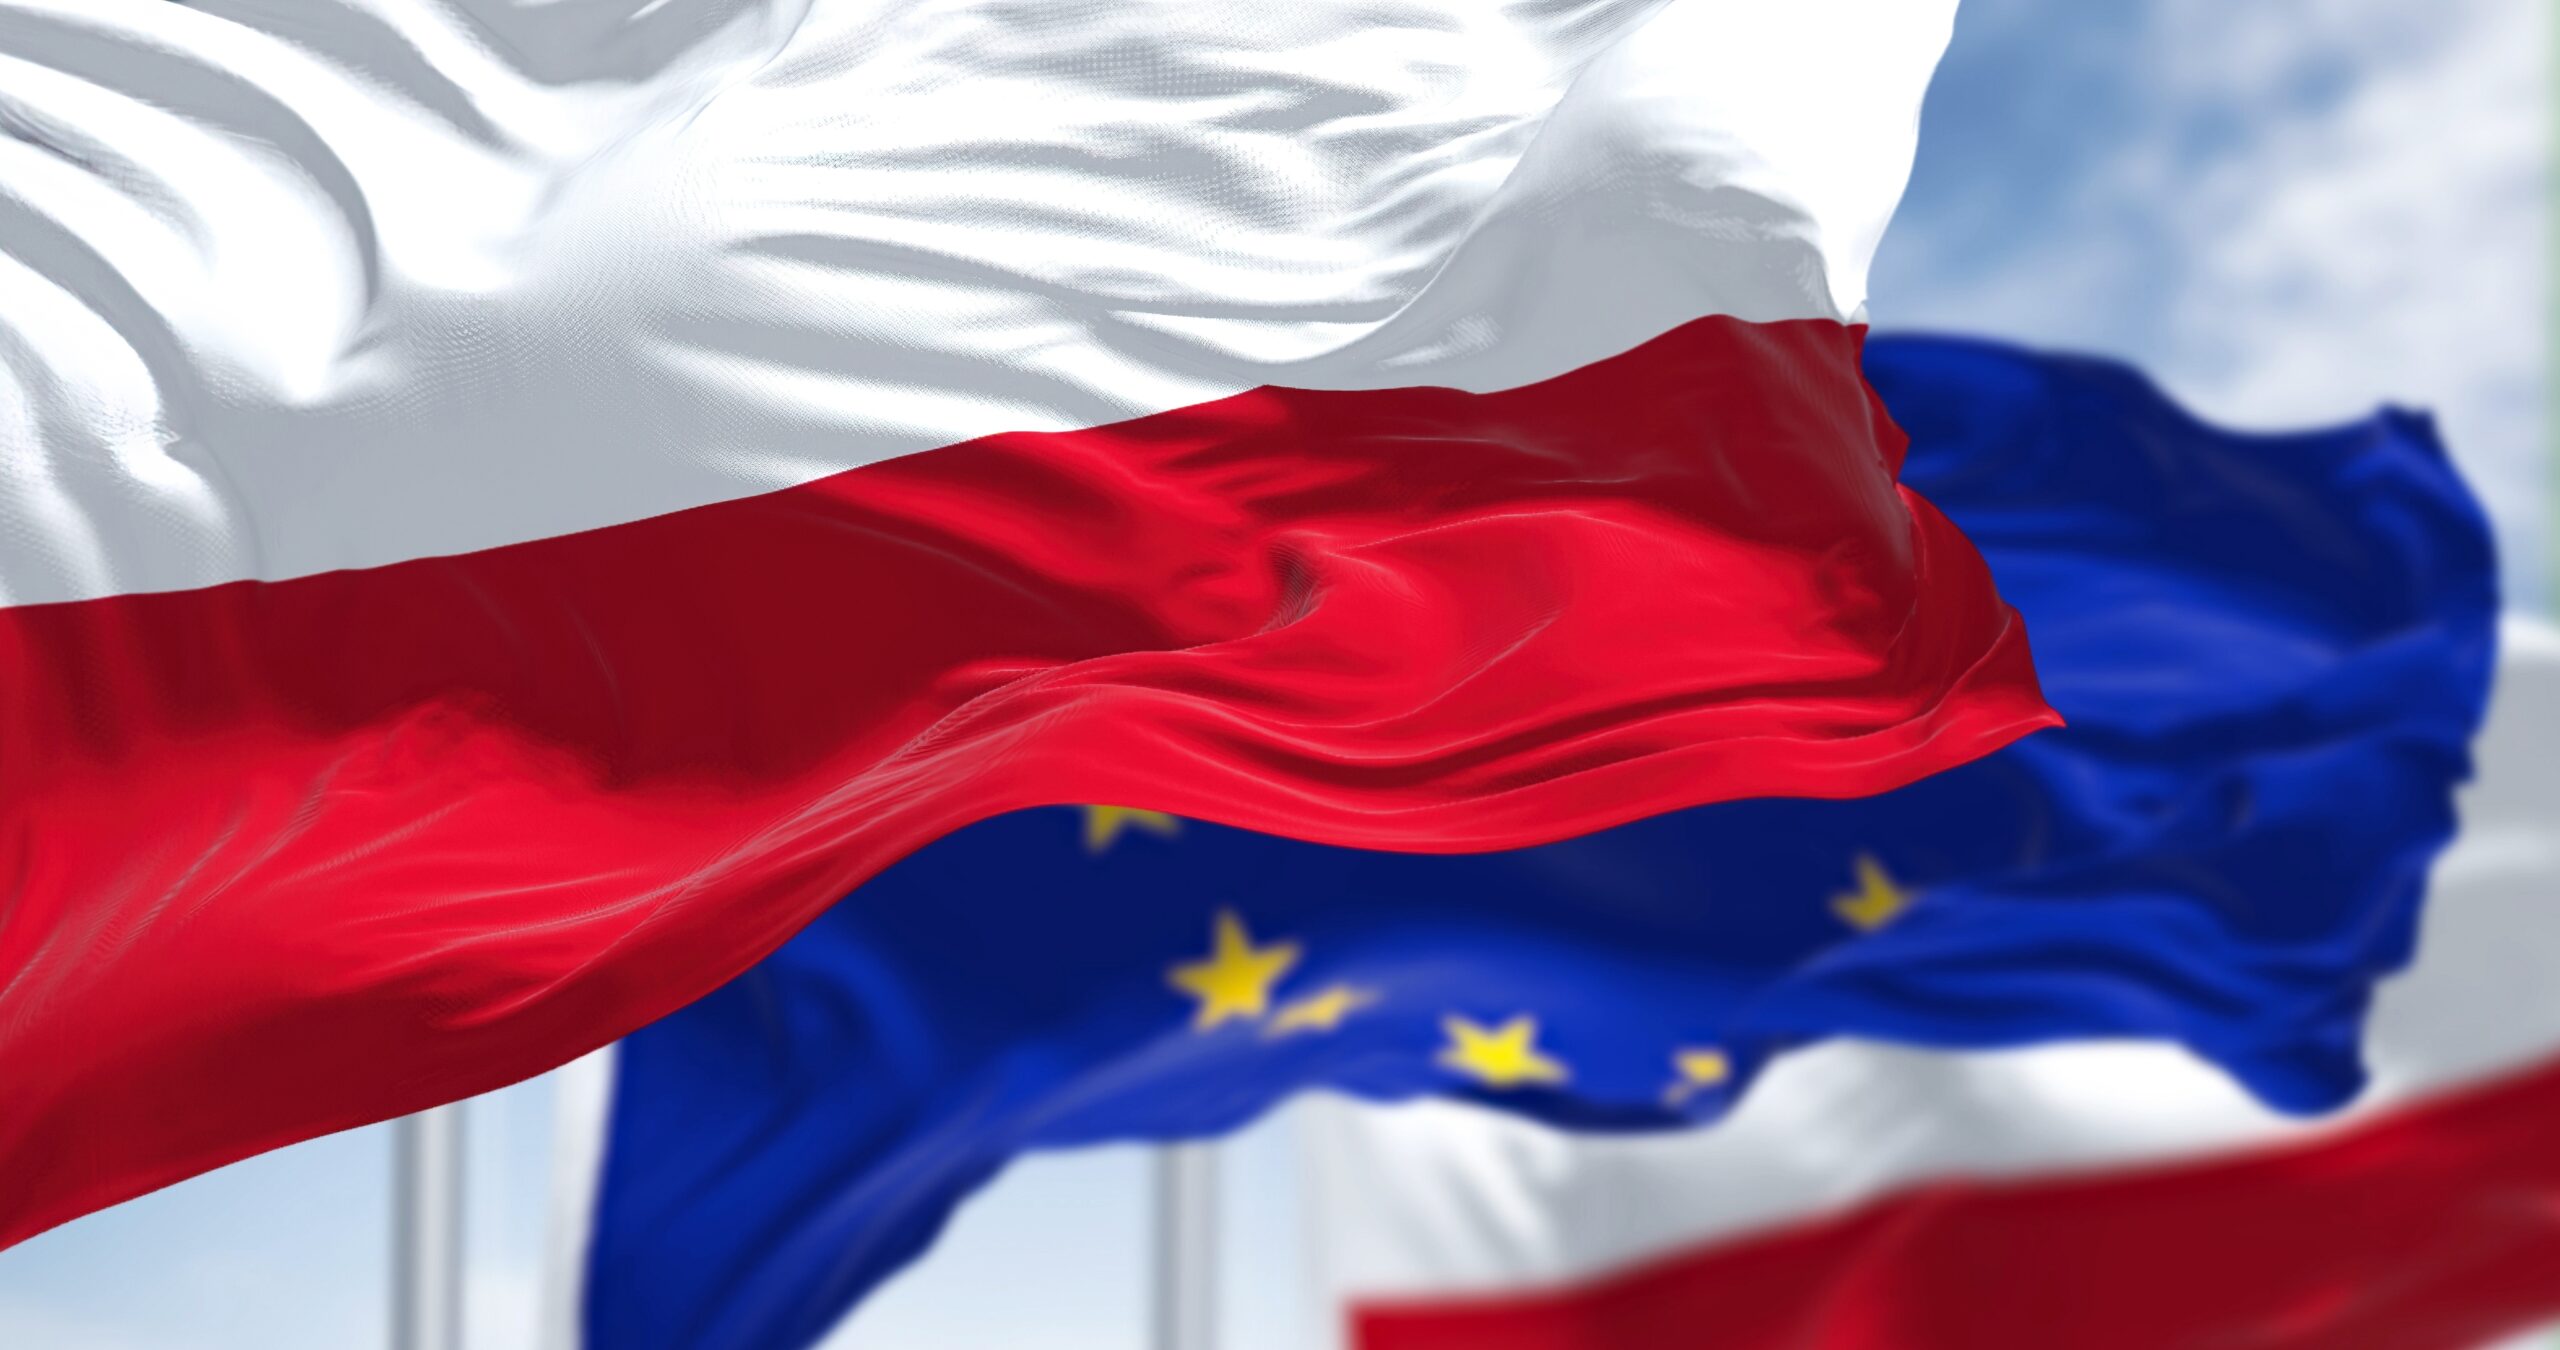 Flaga Unii Europejskiej i flaga Polski